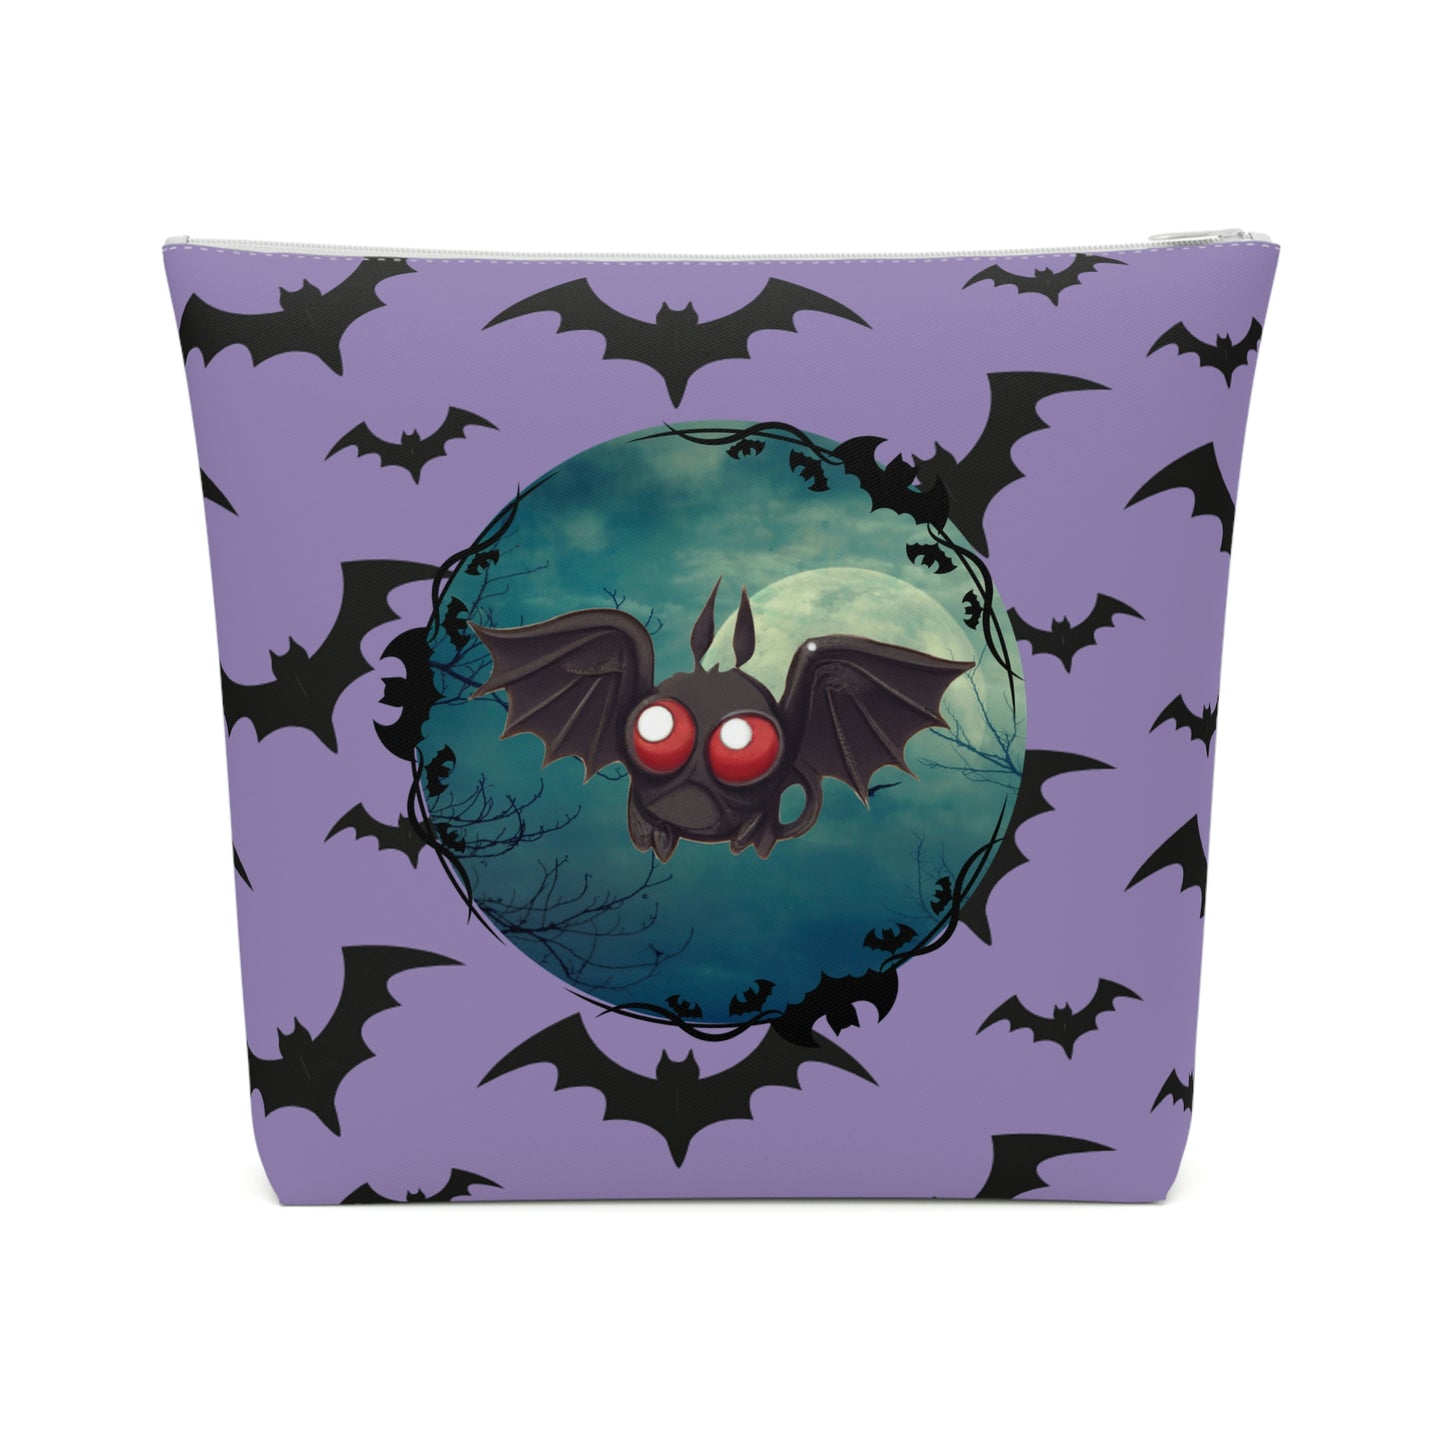 Adorable Pastel Goth Kawaii Bat Makeup Bag